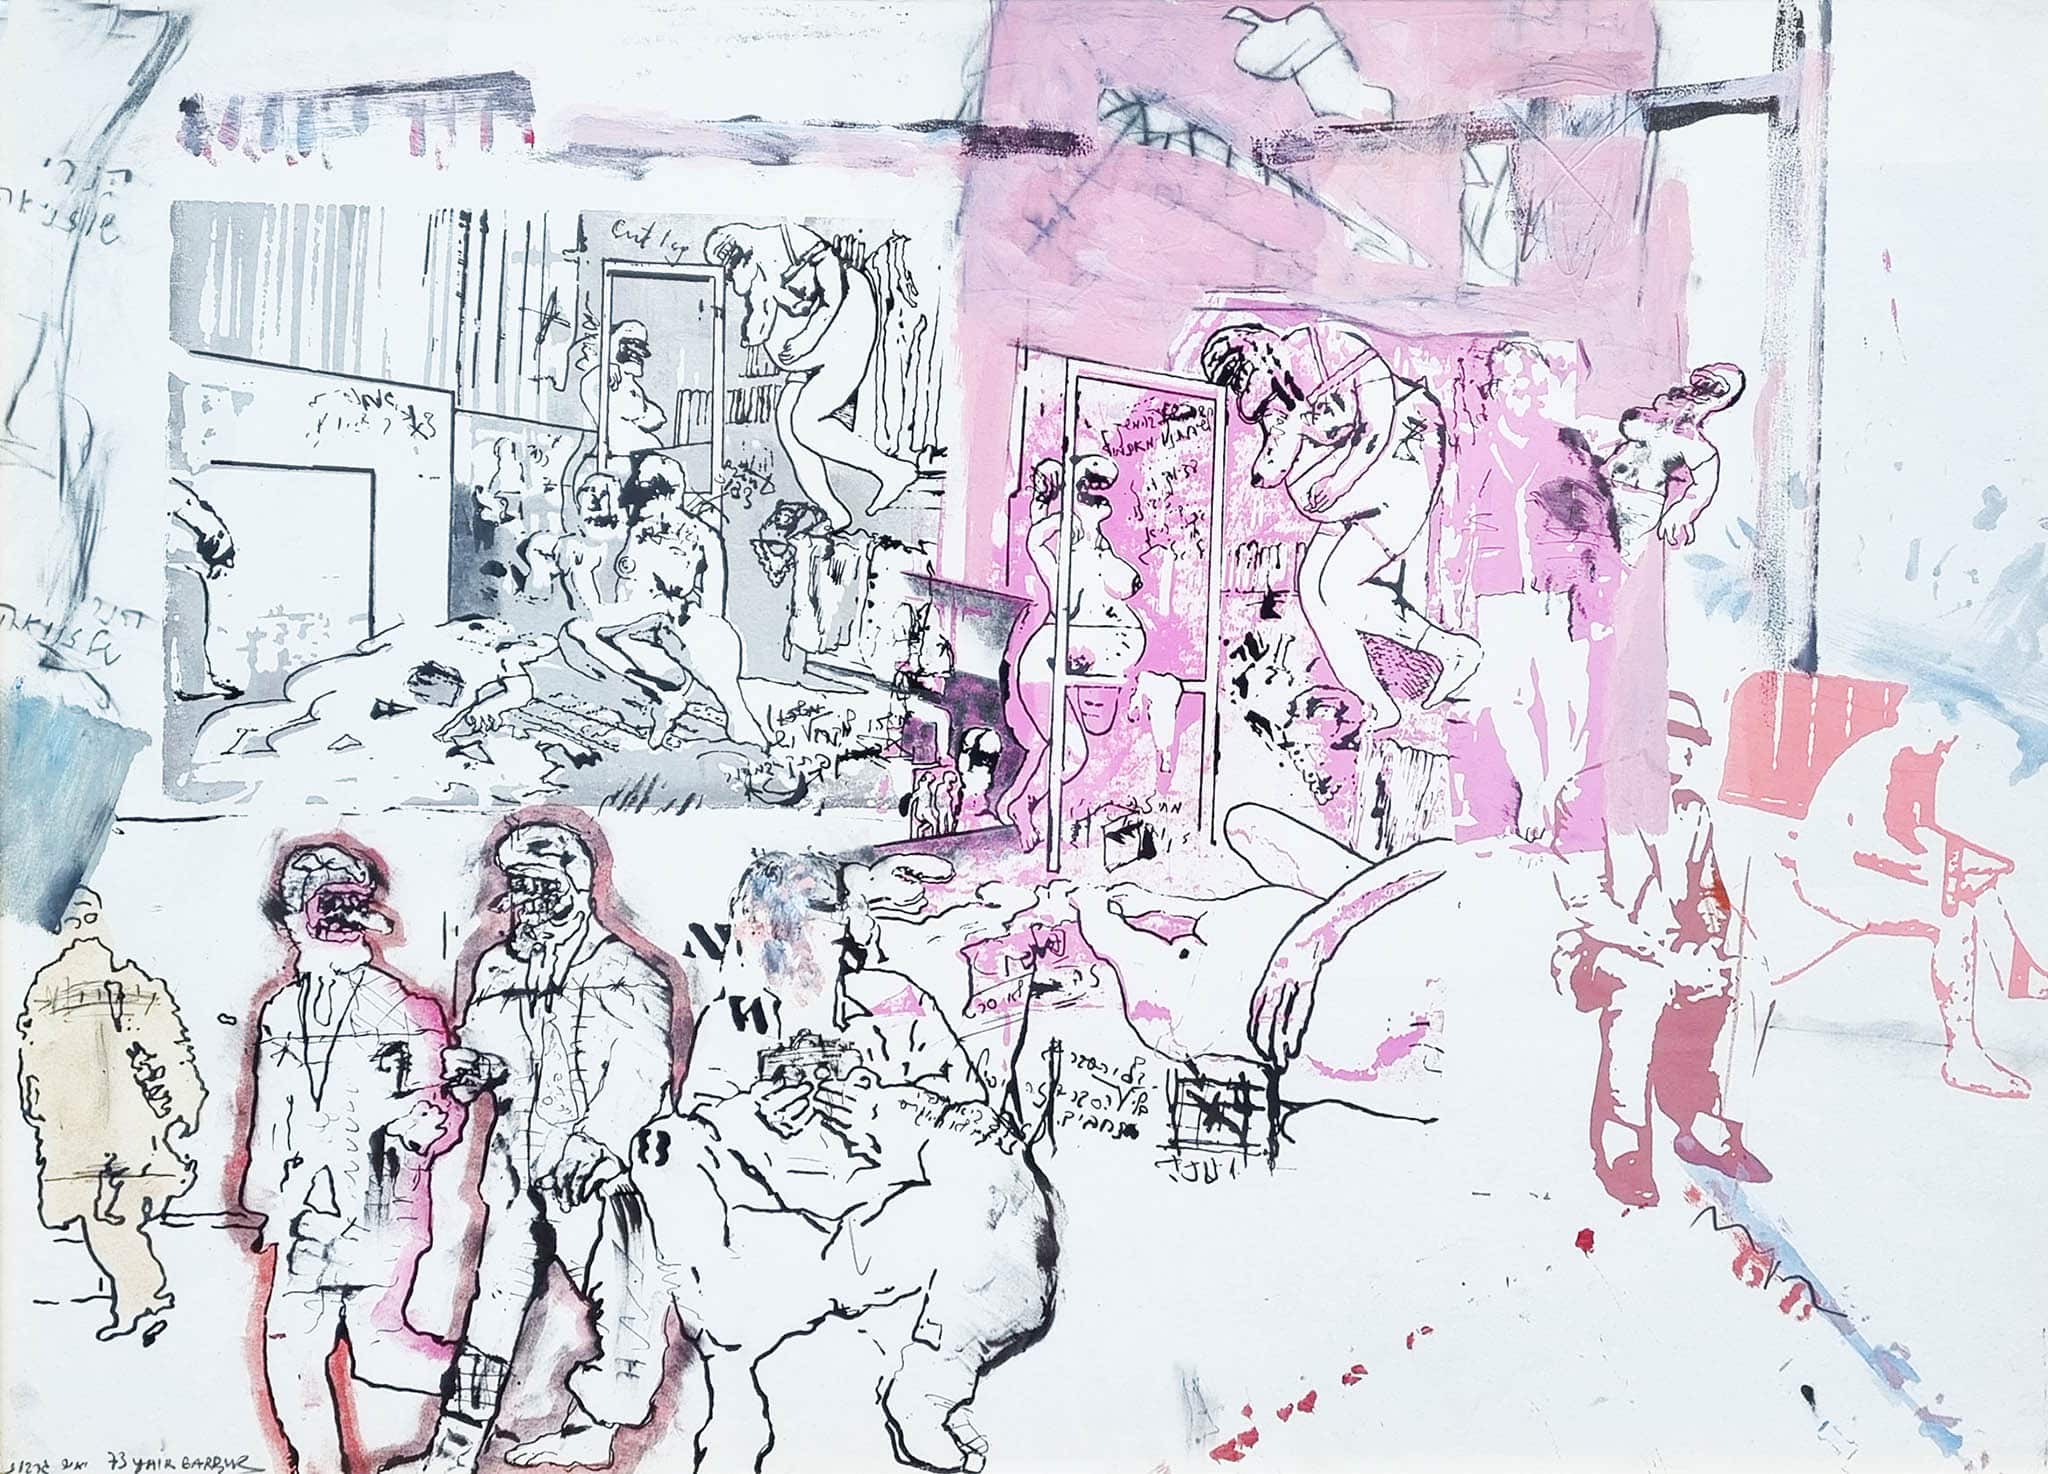 יאיר גרבוז, "ללא כותרת", 1973, טכניקה מעורבת על נייר, 70x50 ס"מ